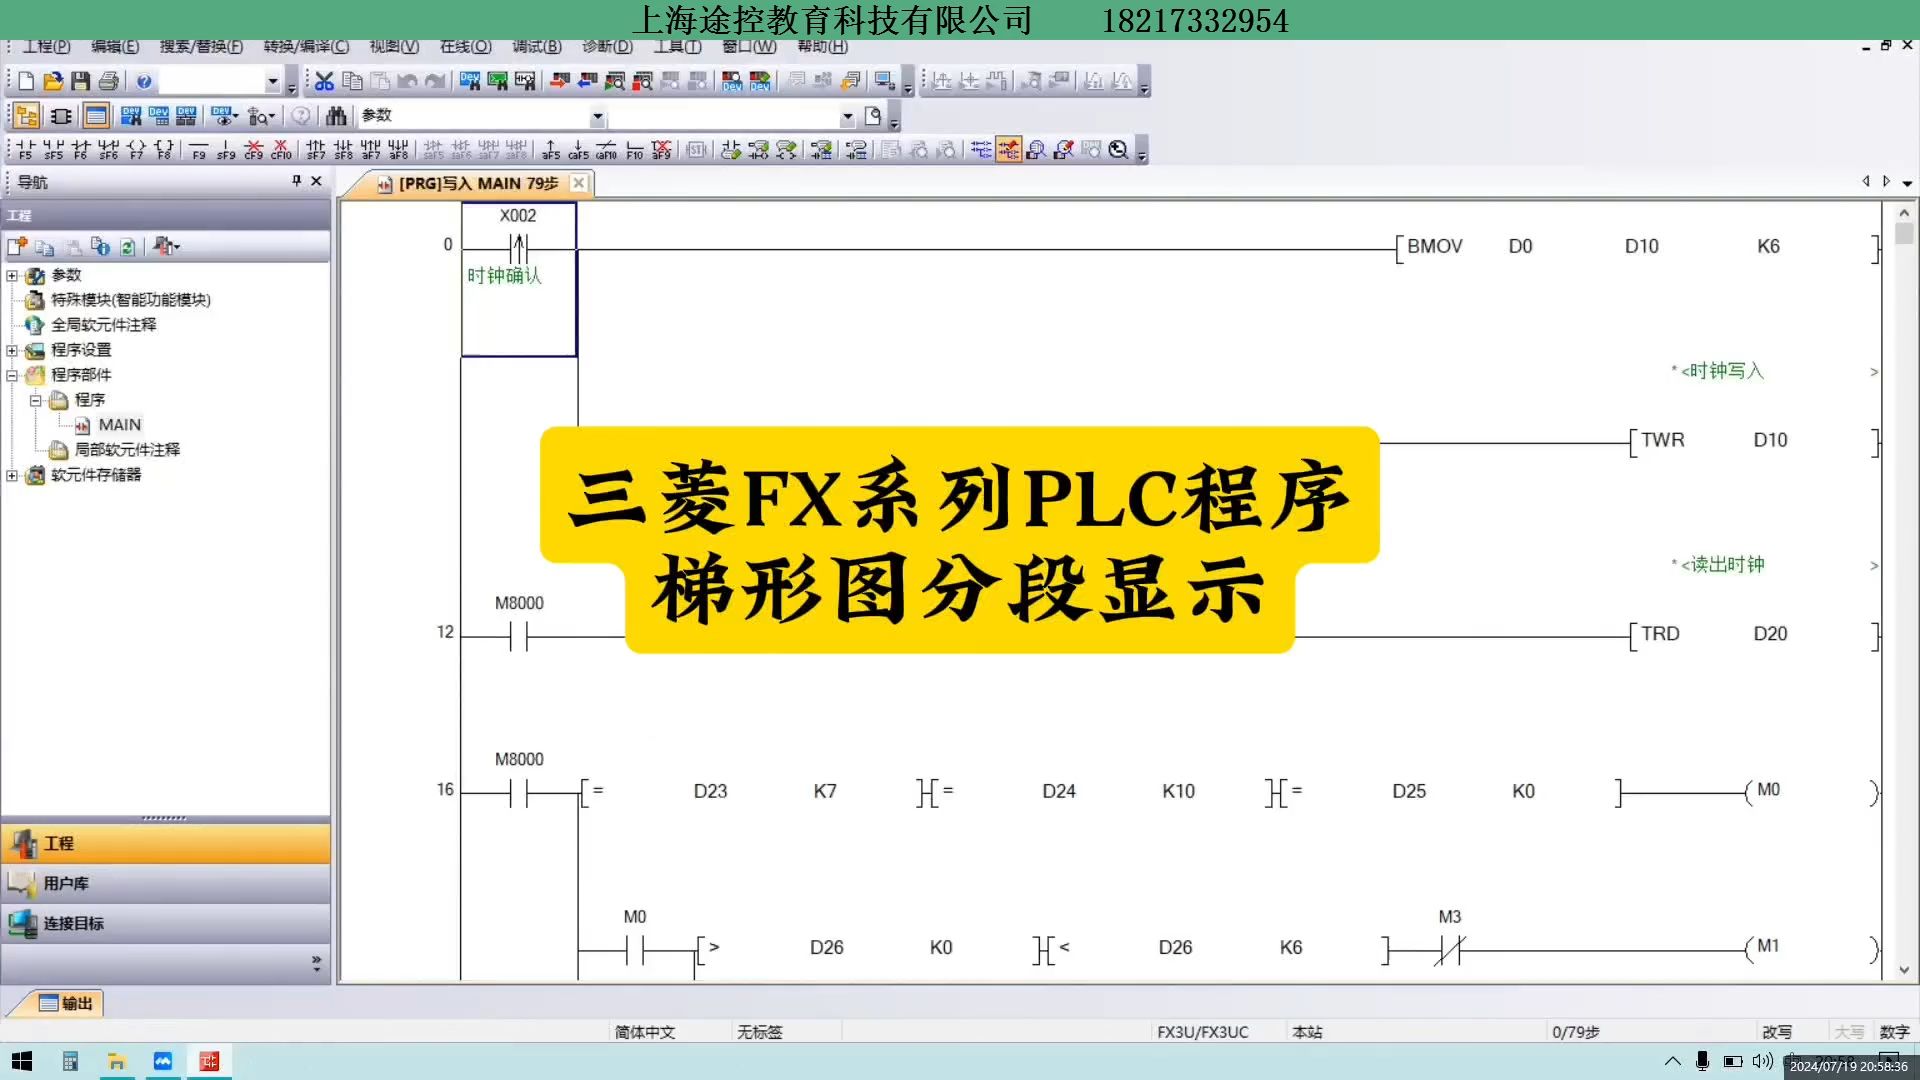 三菱fx系列plc程序梯形图分段显示